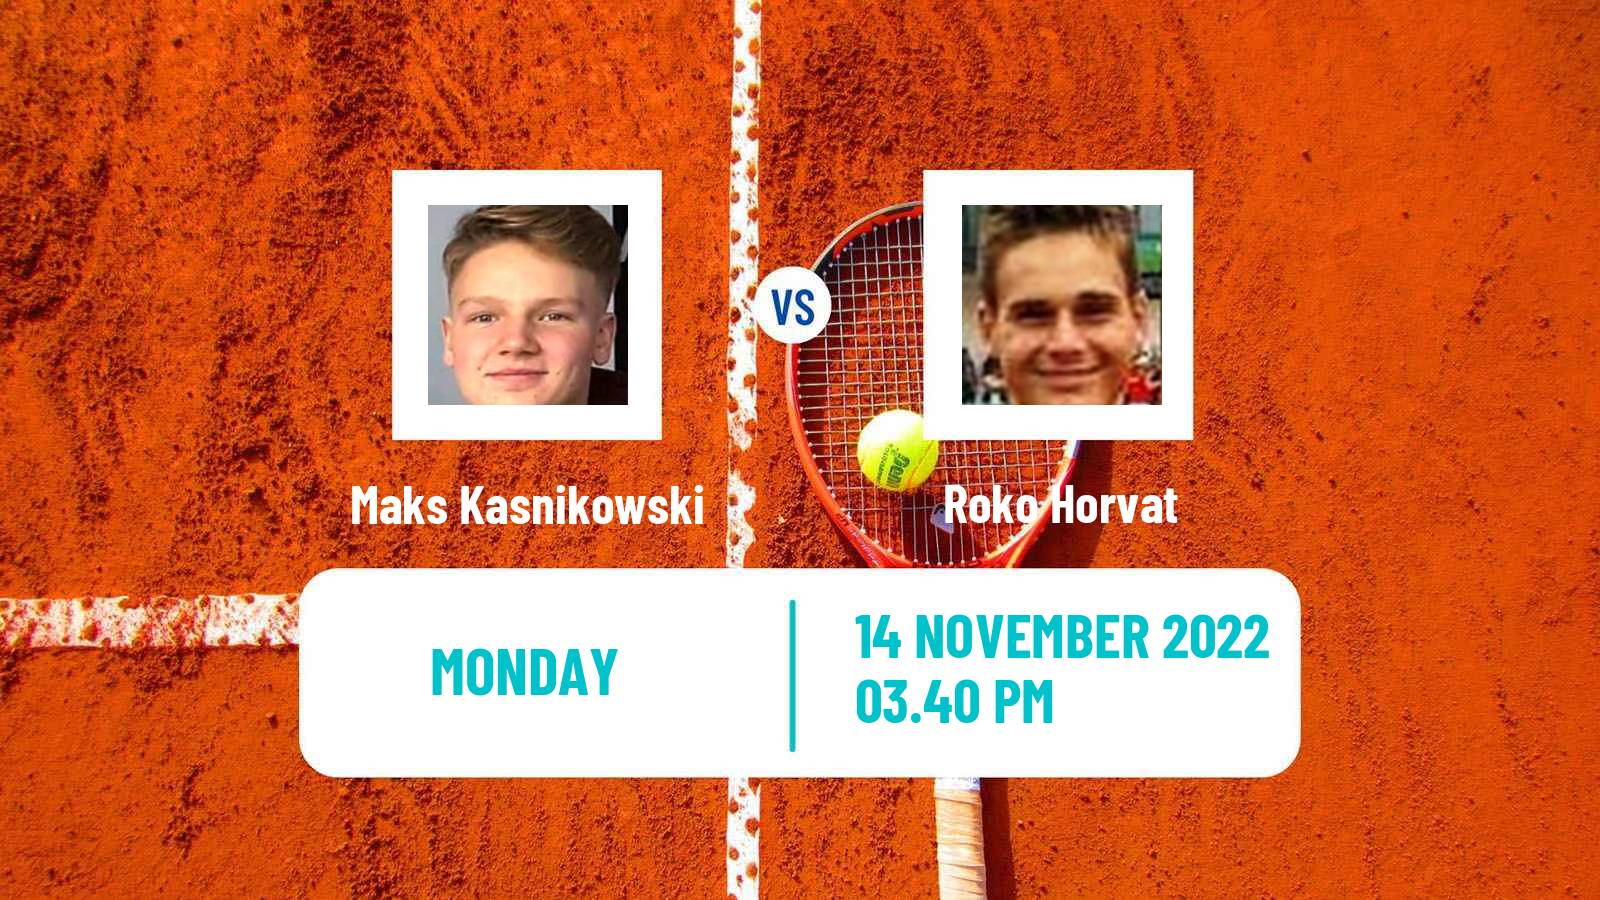 Tennis ATP Challenger Maks Kasnikowski - Roko Horvat